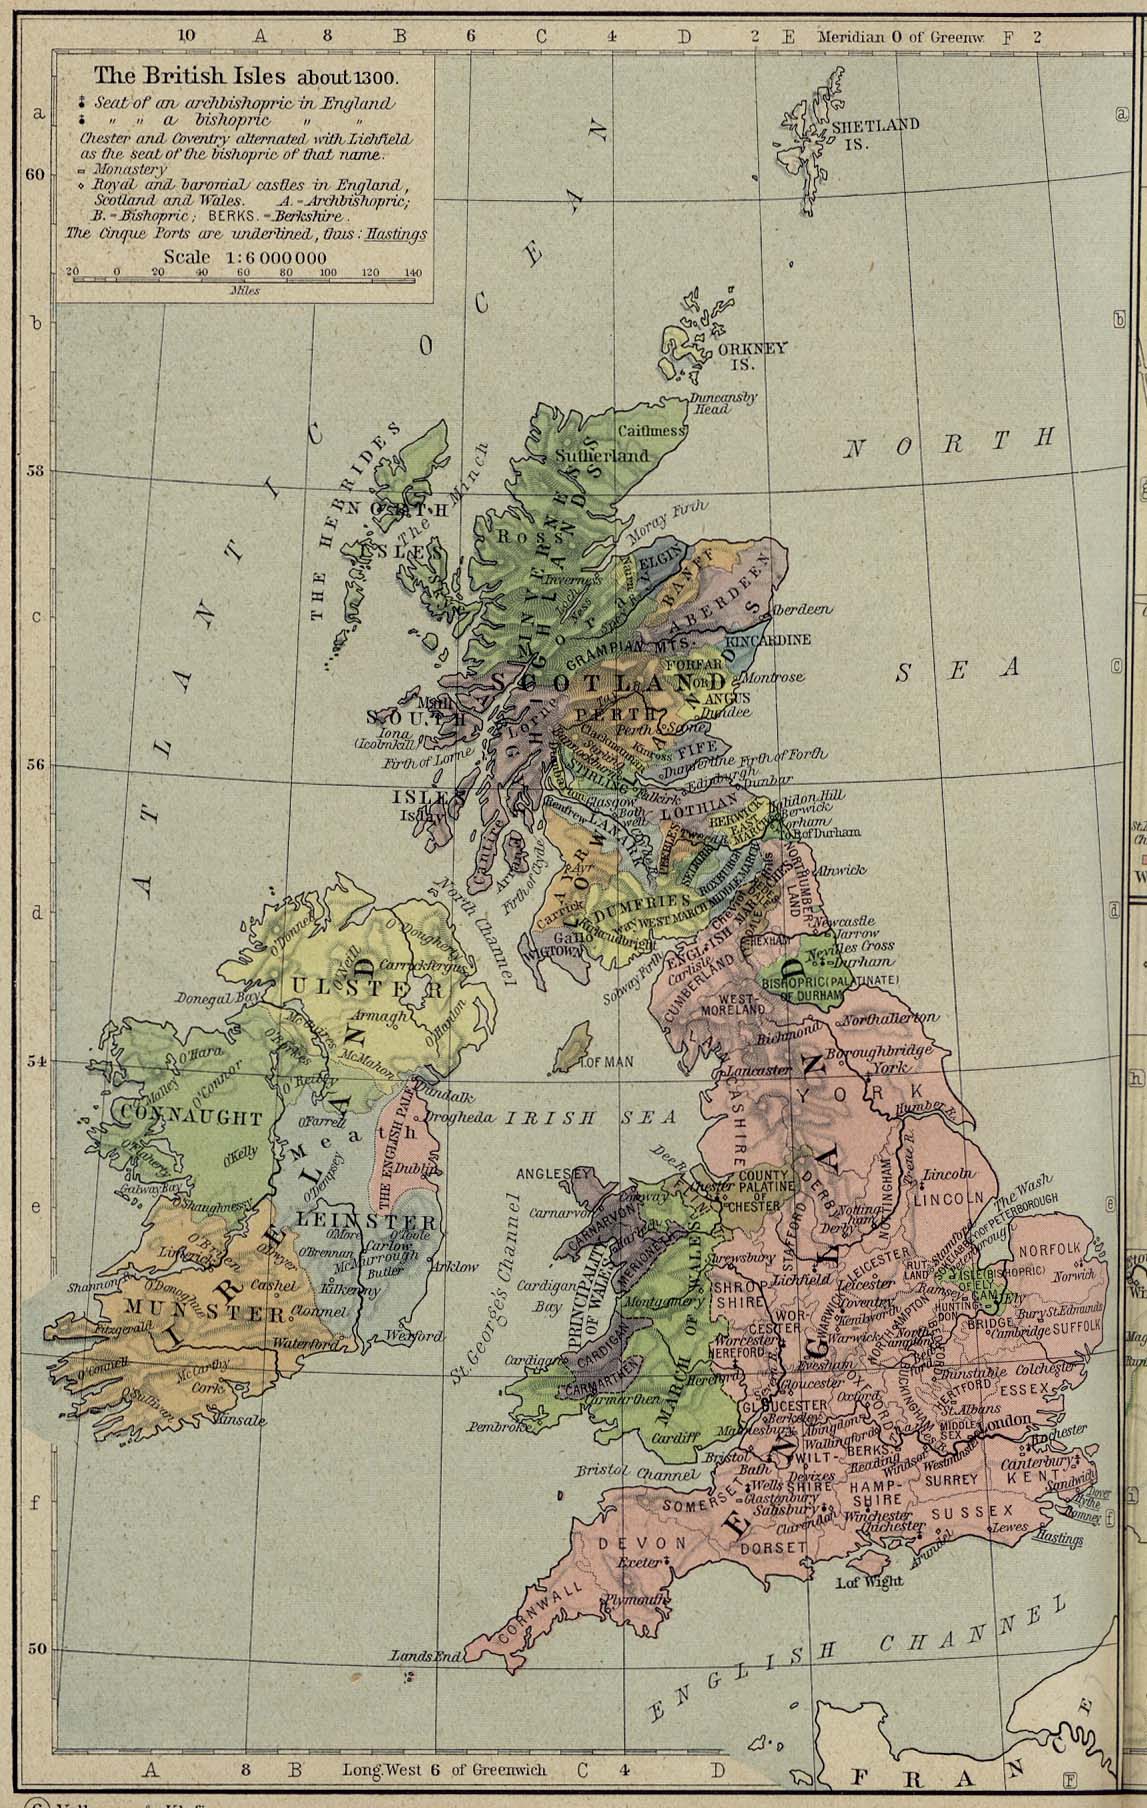 British Isles c. 1300 C. E.